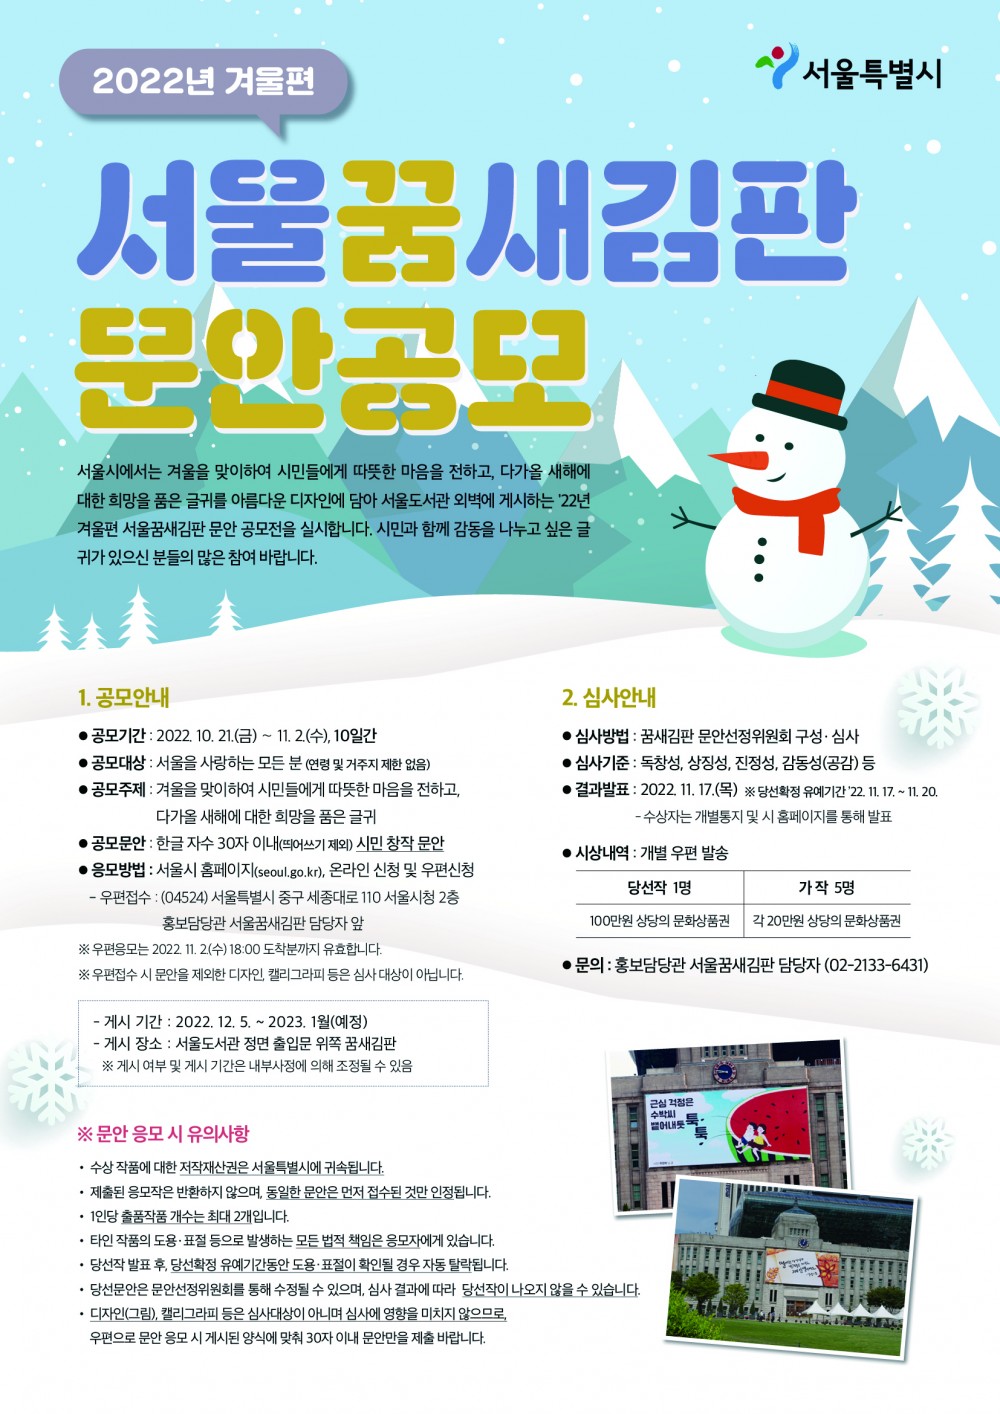 붙임 2. 2022년 겨울편 서울꿈새김판문안 공모 포스터